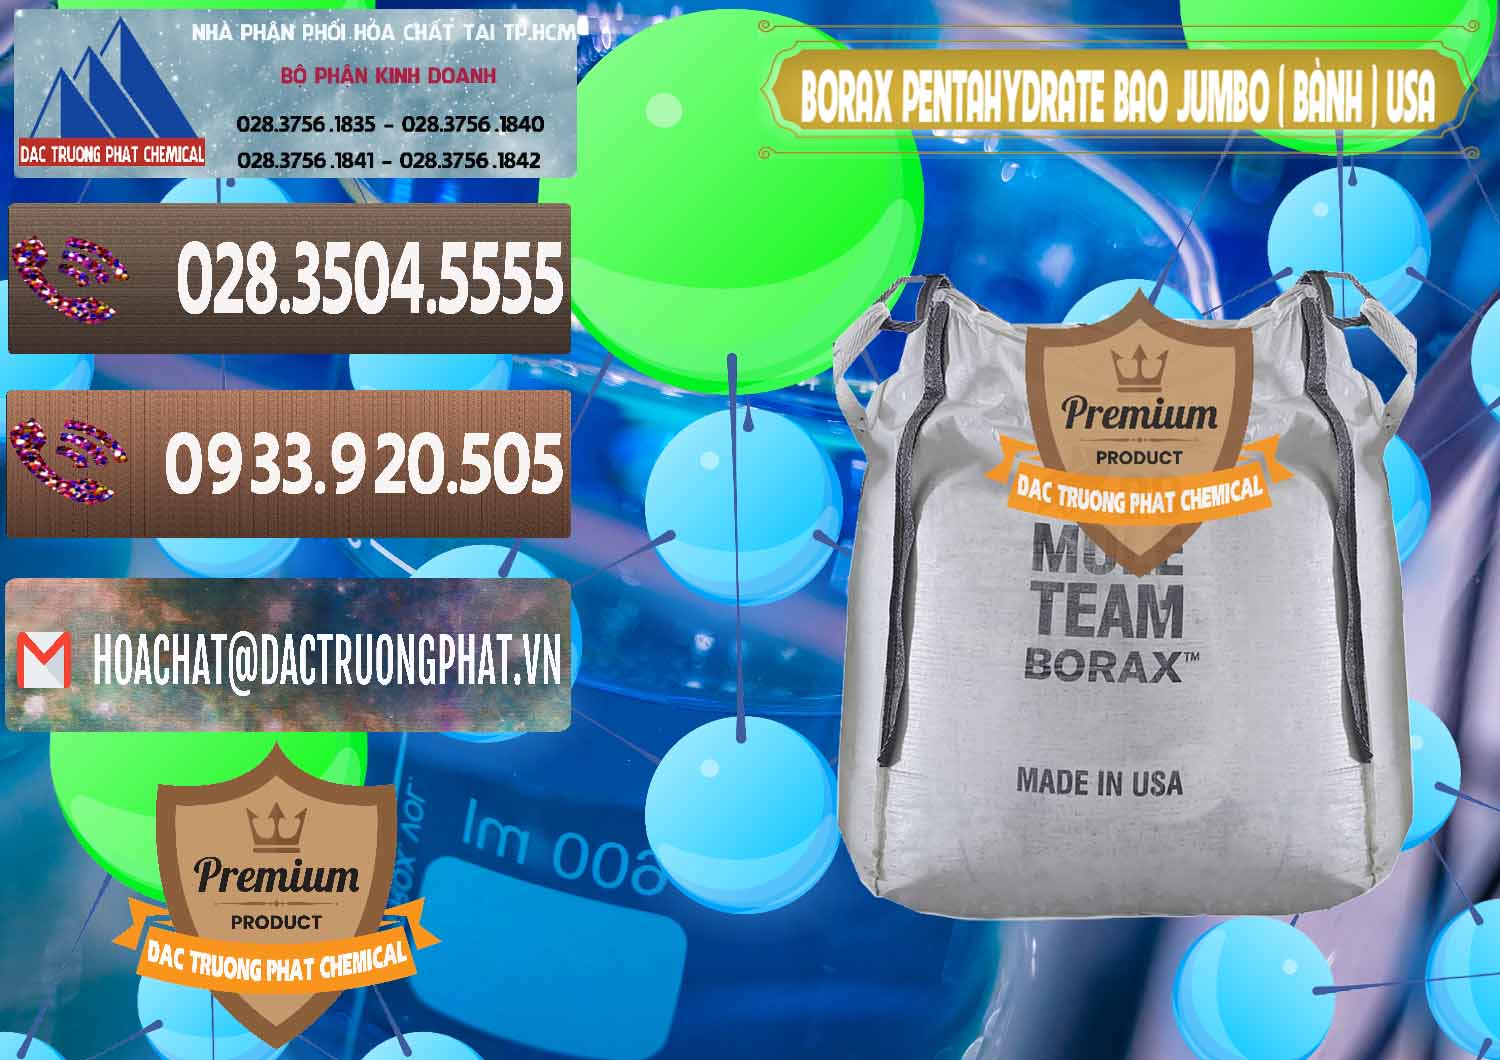 Công ty chuyên nhập khẩu & bán Borax Pentahydrate Bao Jumbo ( Bành ) Mule 20 Team Mỹ Usa - 0278 - Đơn vị cung cấp ( bán ) hóa chất tại TP.HCM - hoachatviet.net